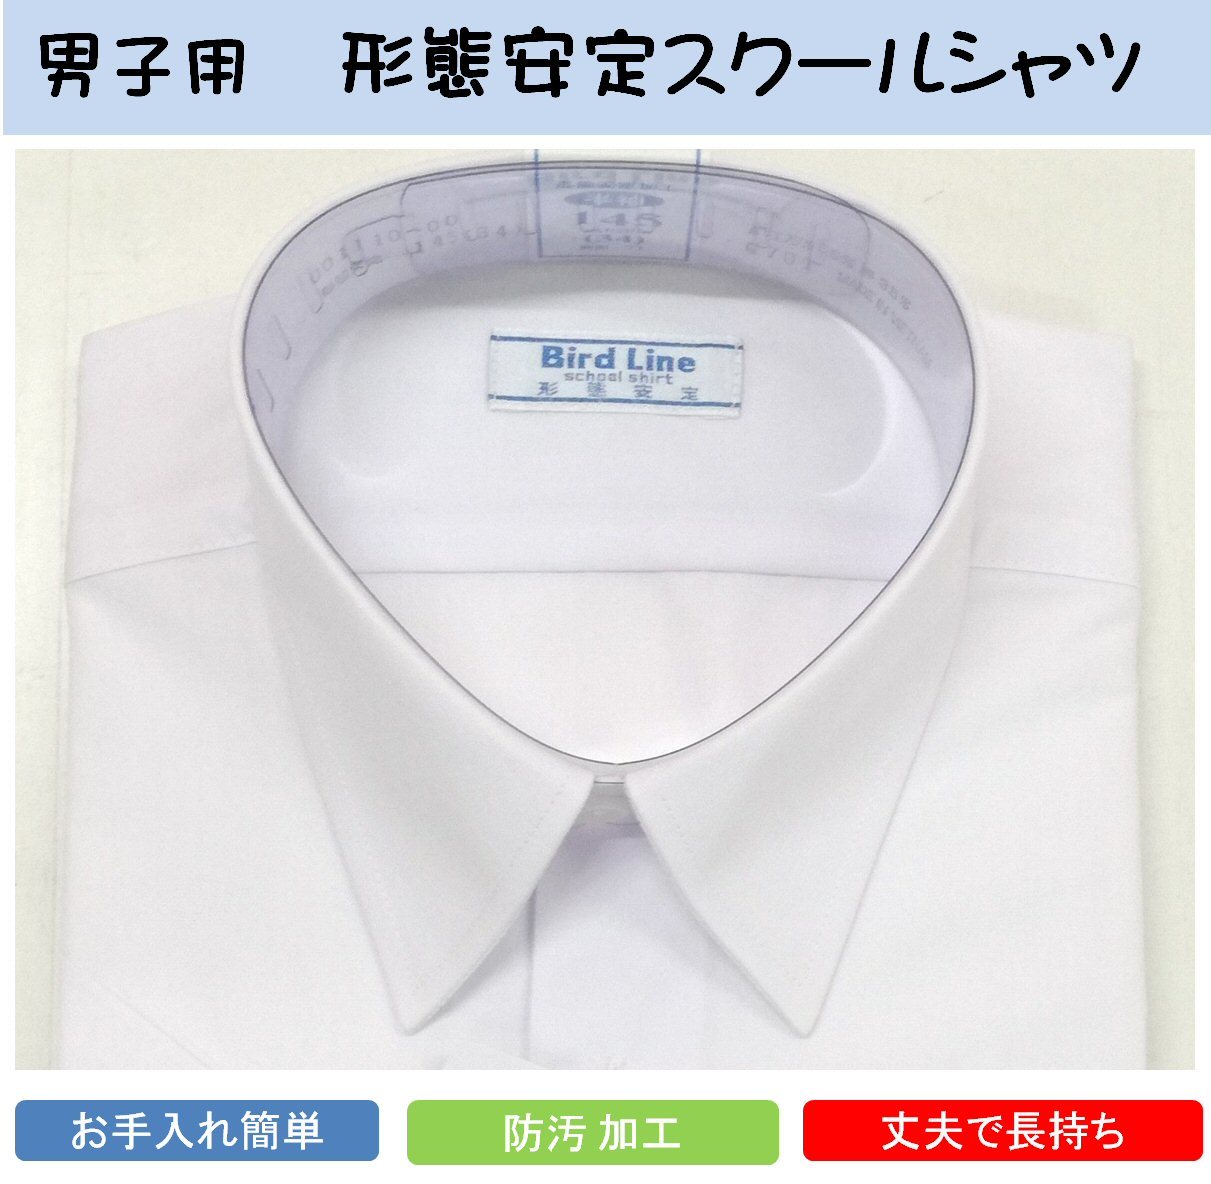 男子スクールシャツ 半袖（白） B体 透け防止 形状安定 防汚加工